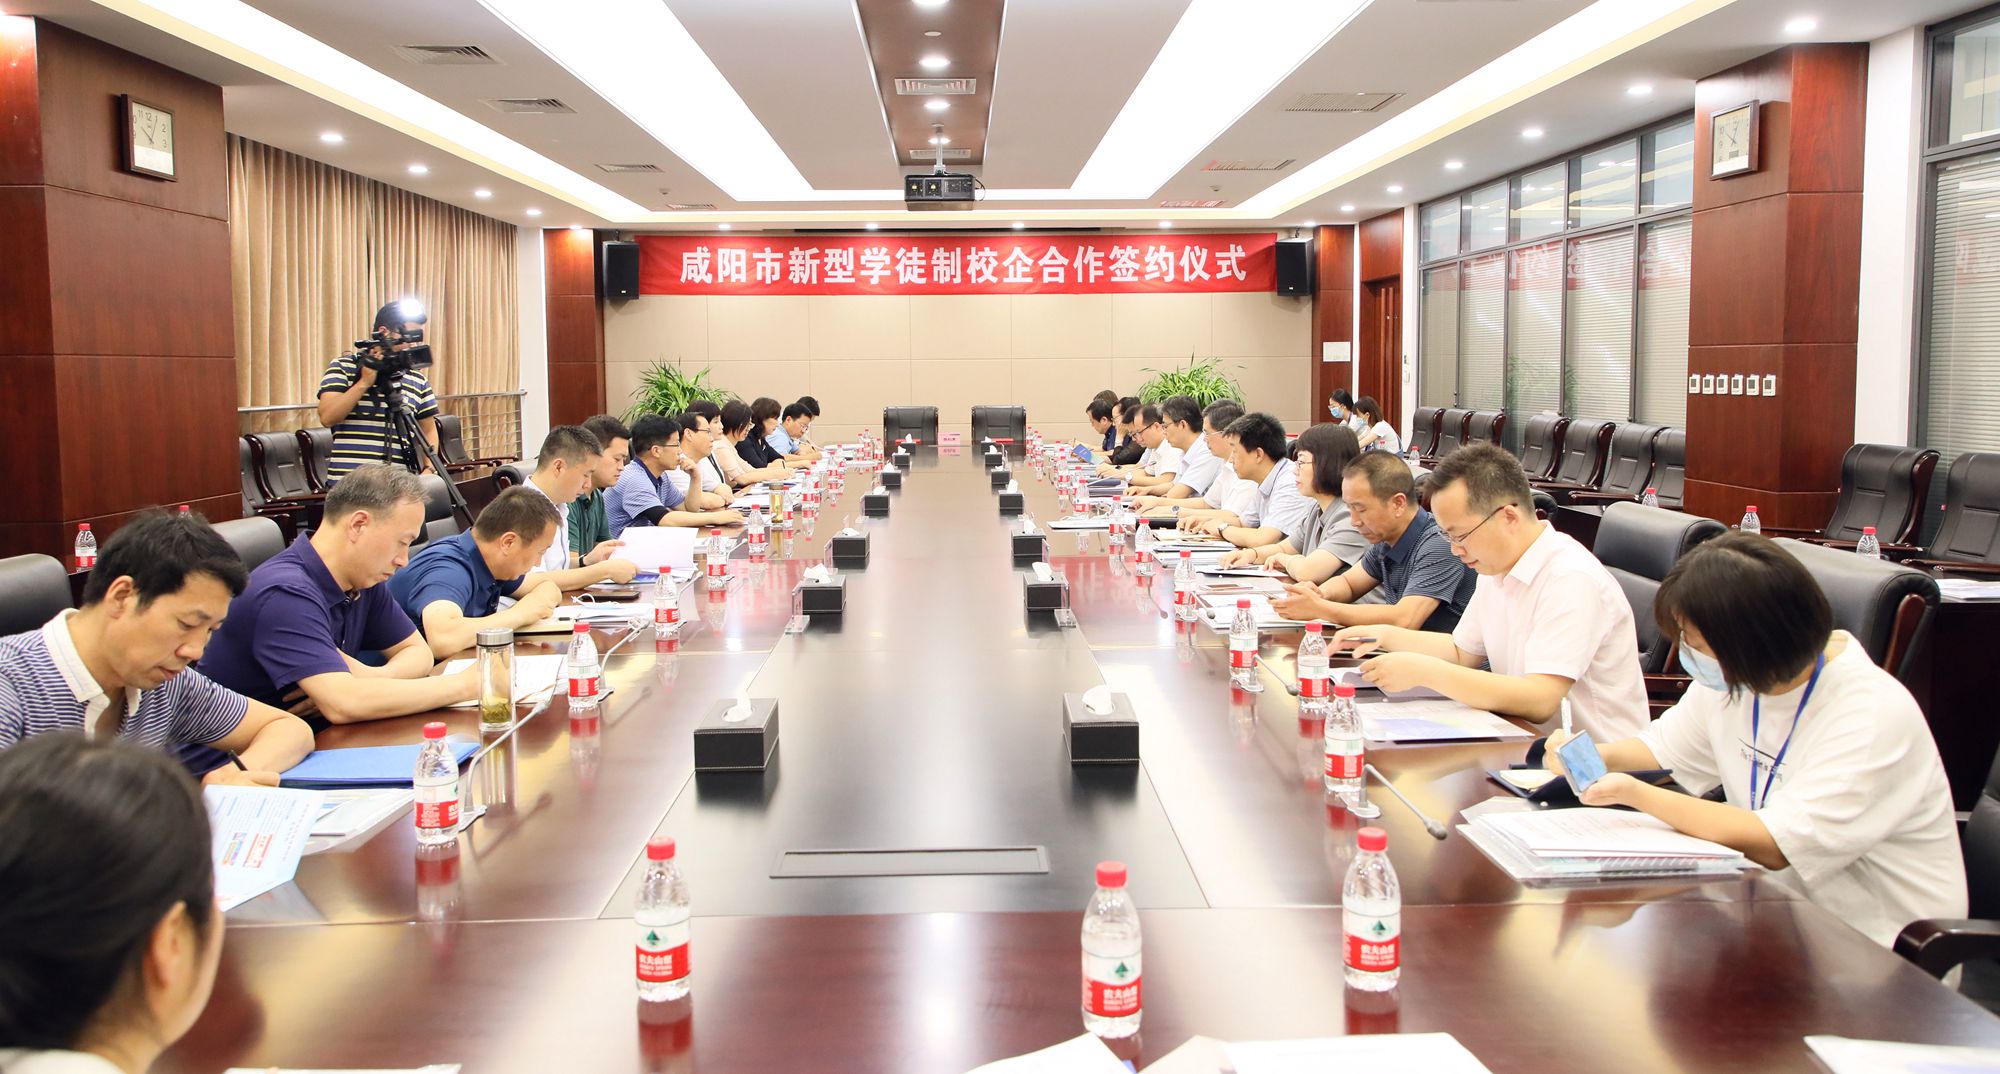 咸阳职院与咸阳市企业举行新型学徒制校企合作签约仪式